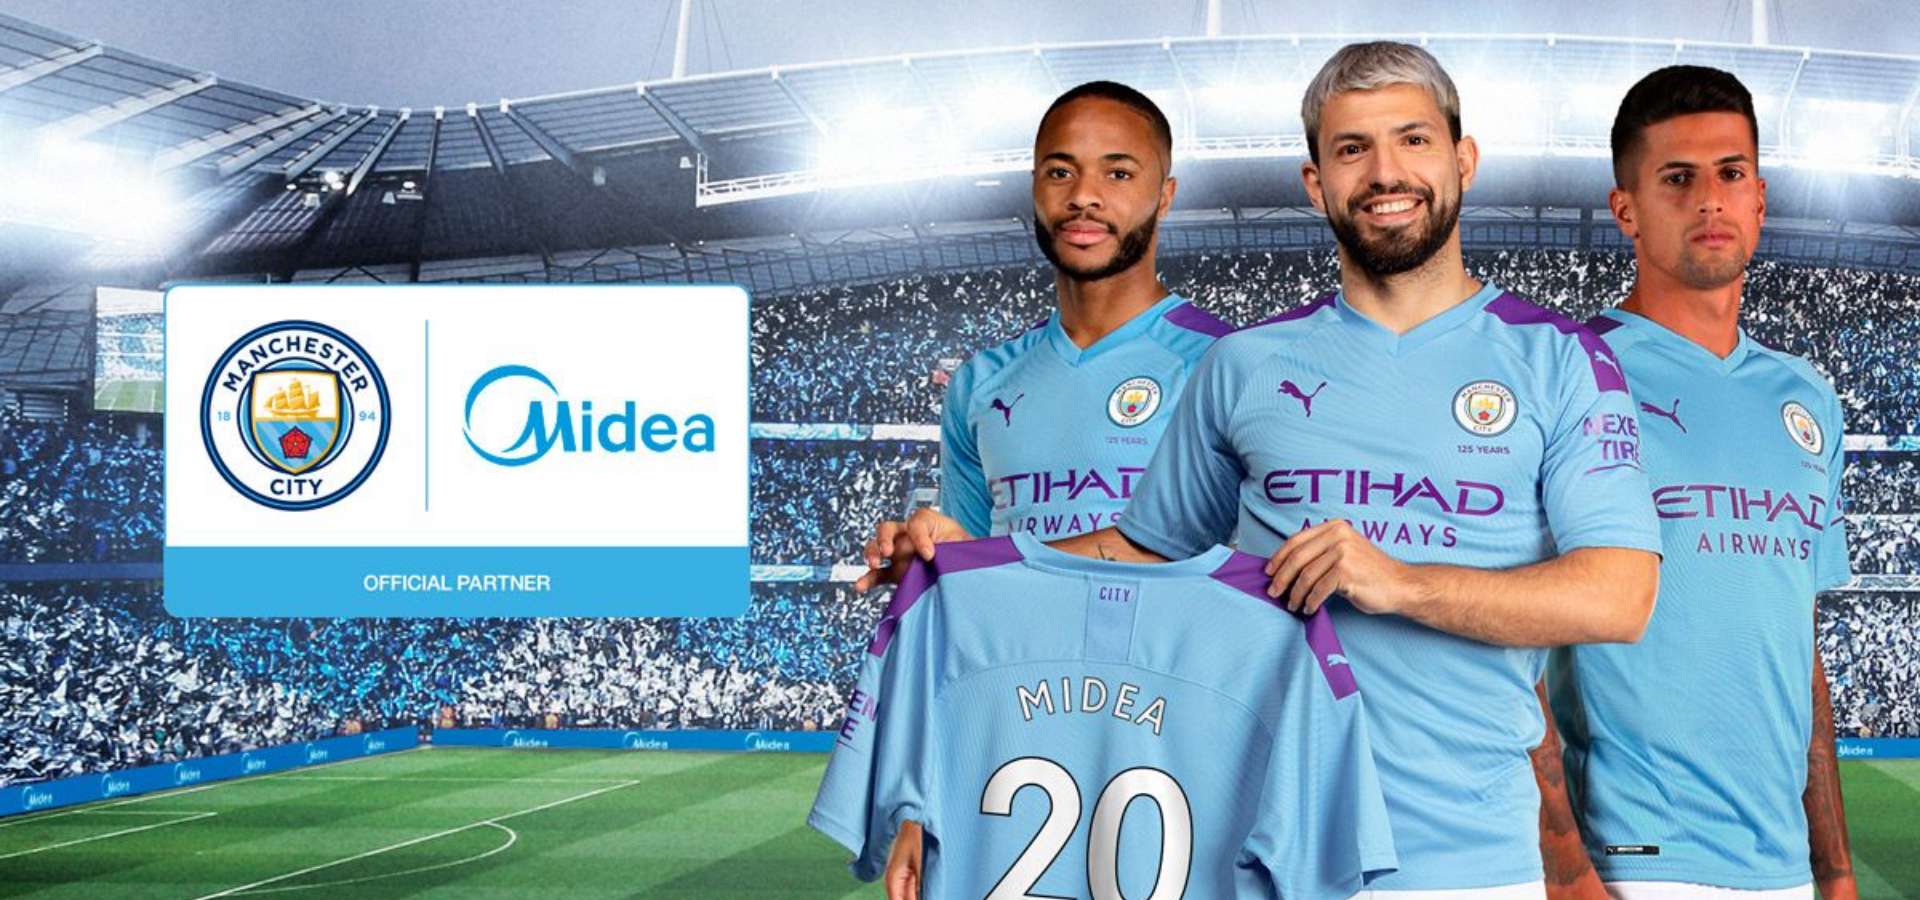 Manchester City annuncia una partnership globale con Midea, colosso nella produzione di elettrodomestici